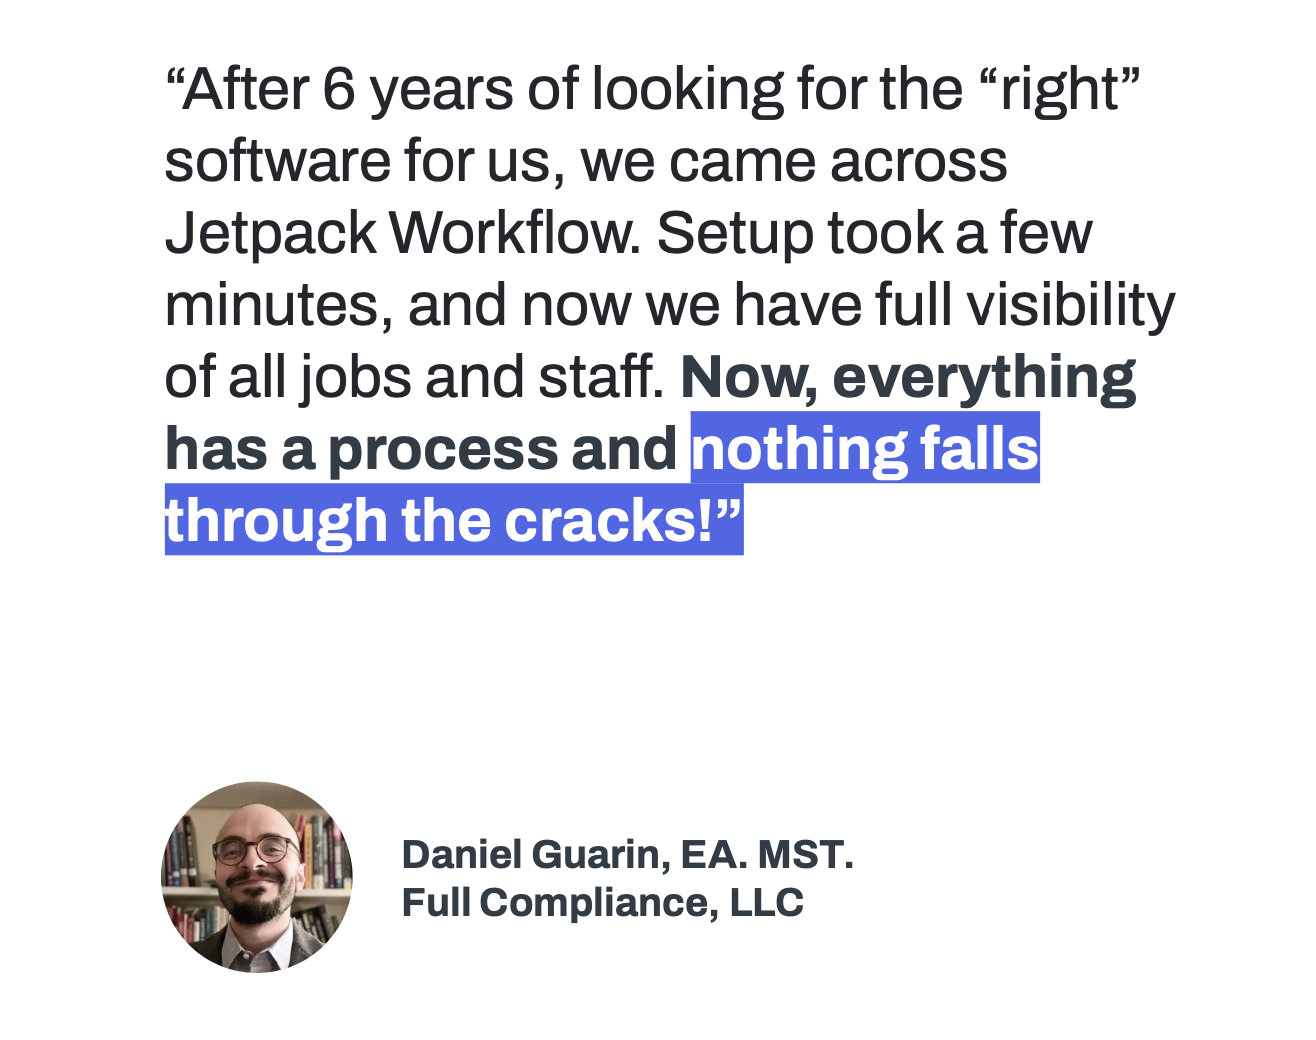 Jetpack Workflow customer quote.